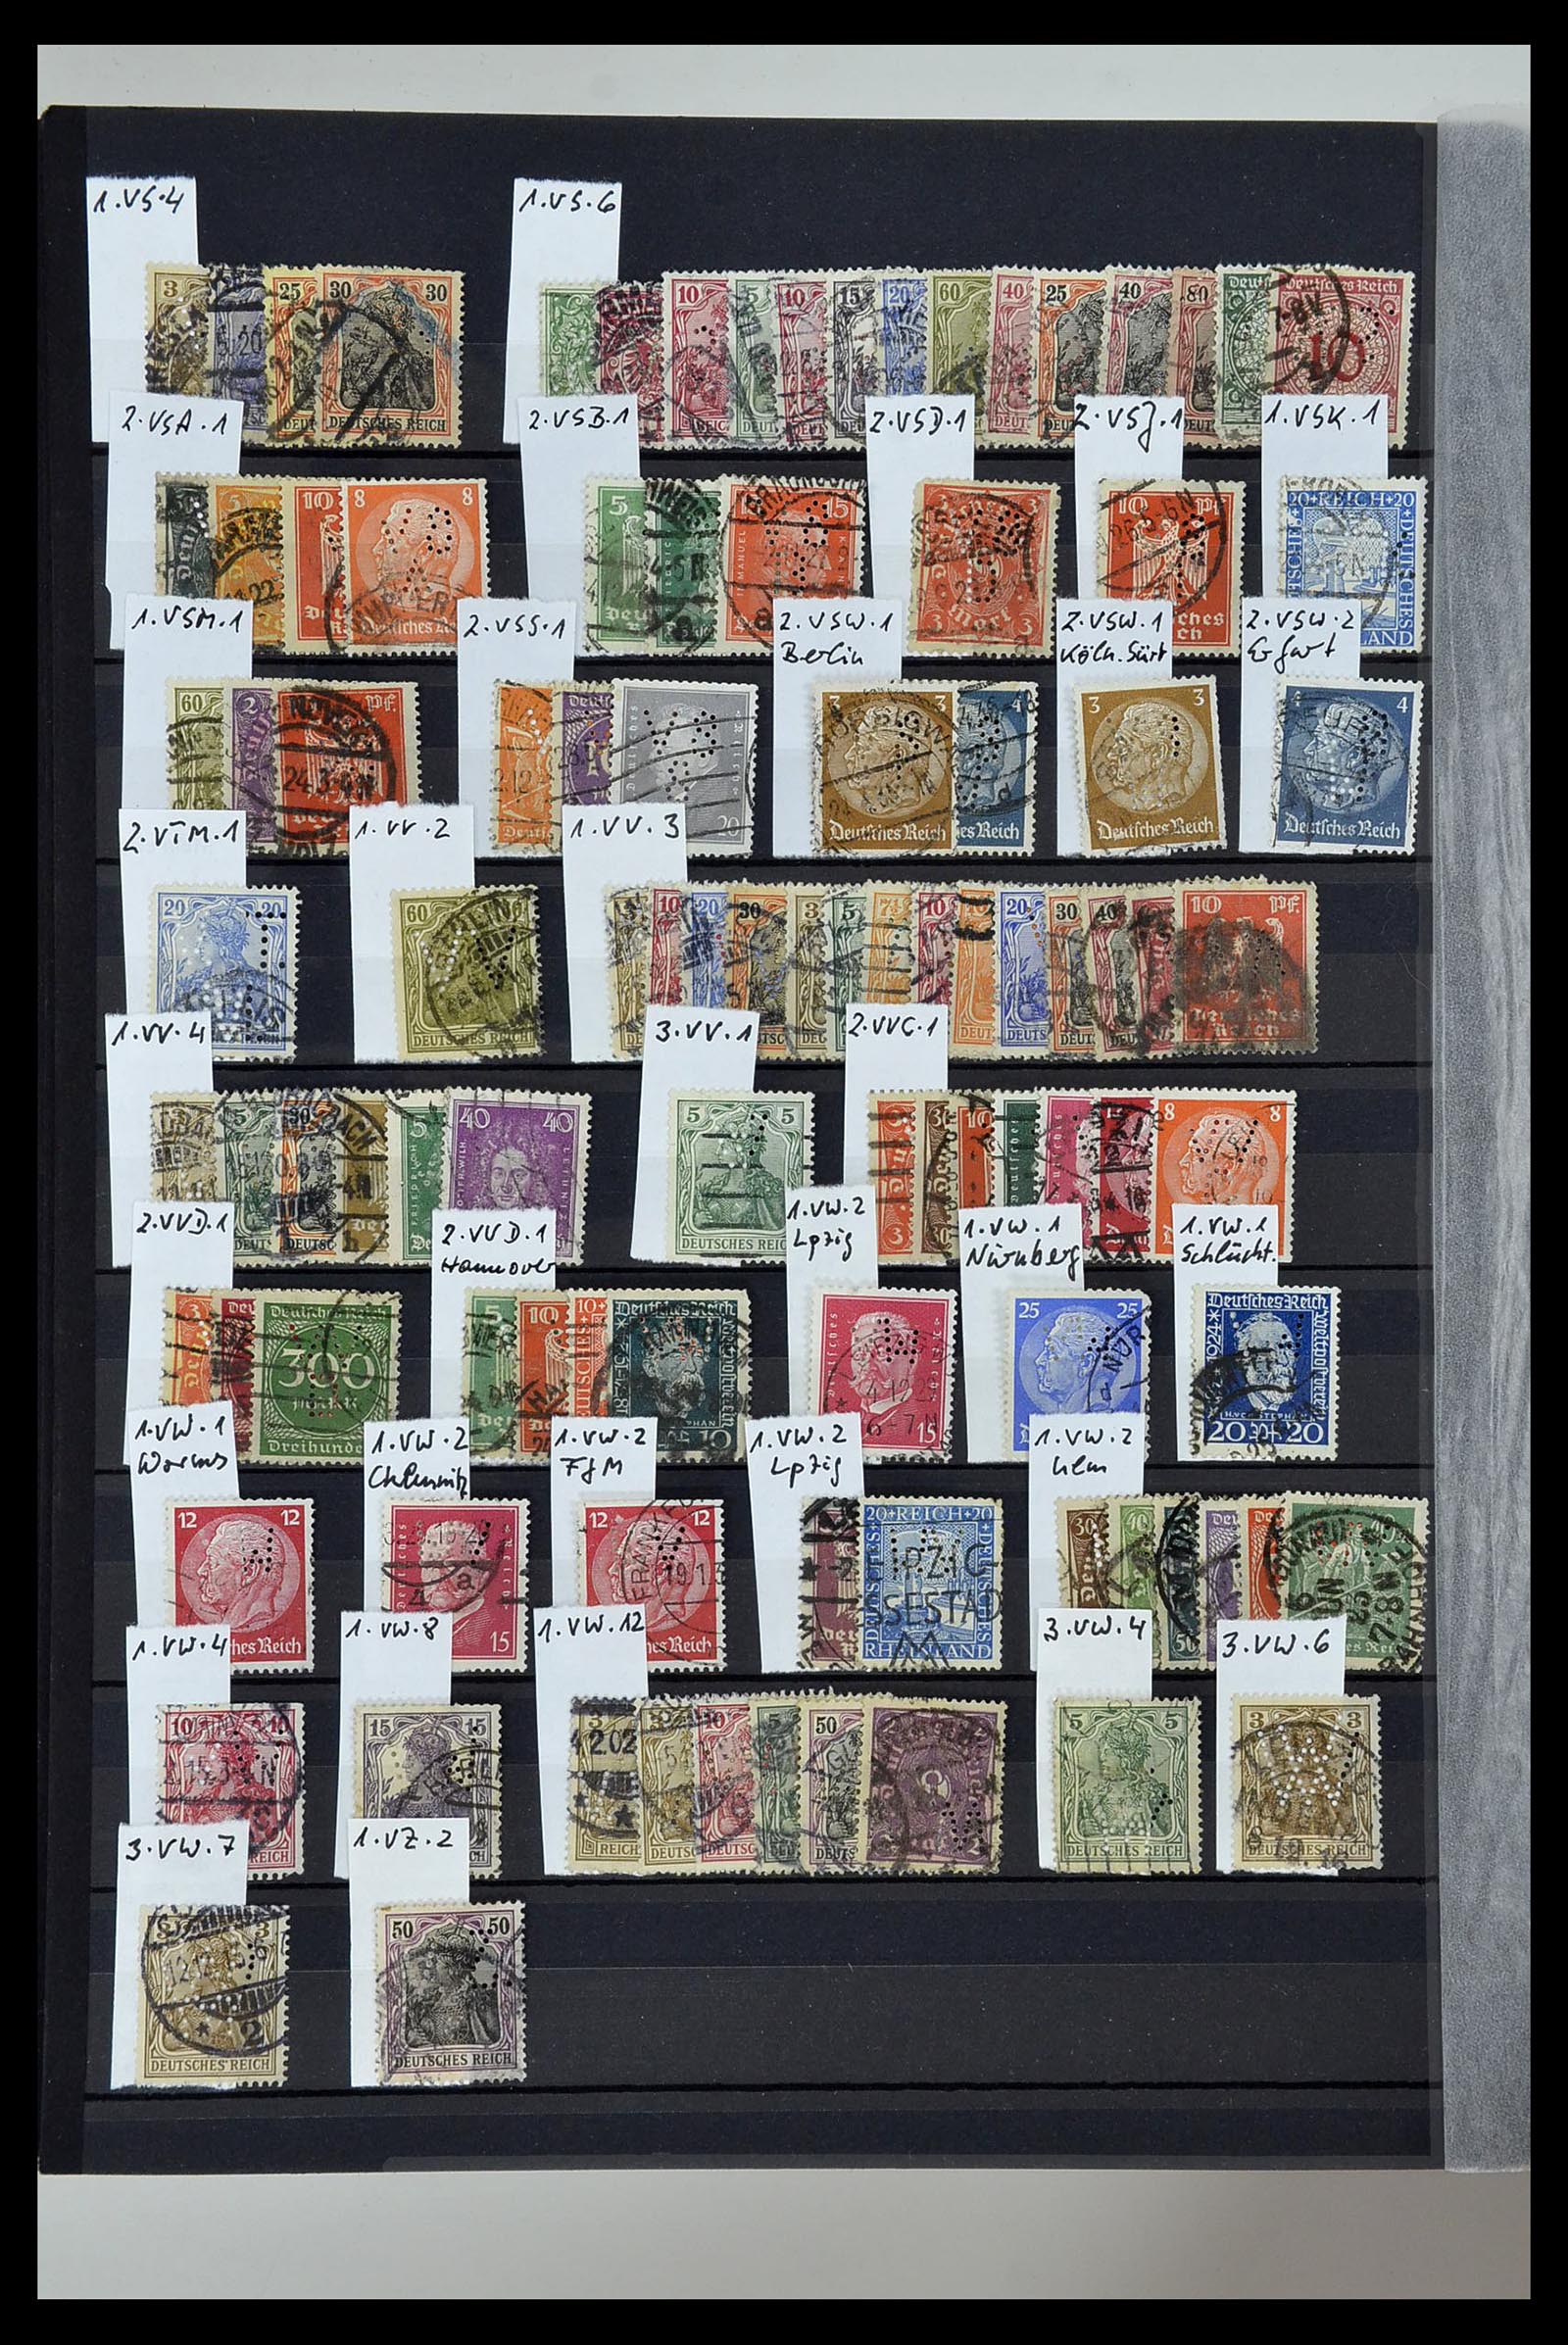 34432 048 - Stamp Collection 34432 German Reich perfins 1900-1933.